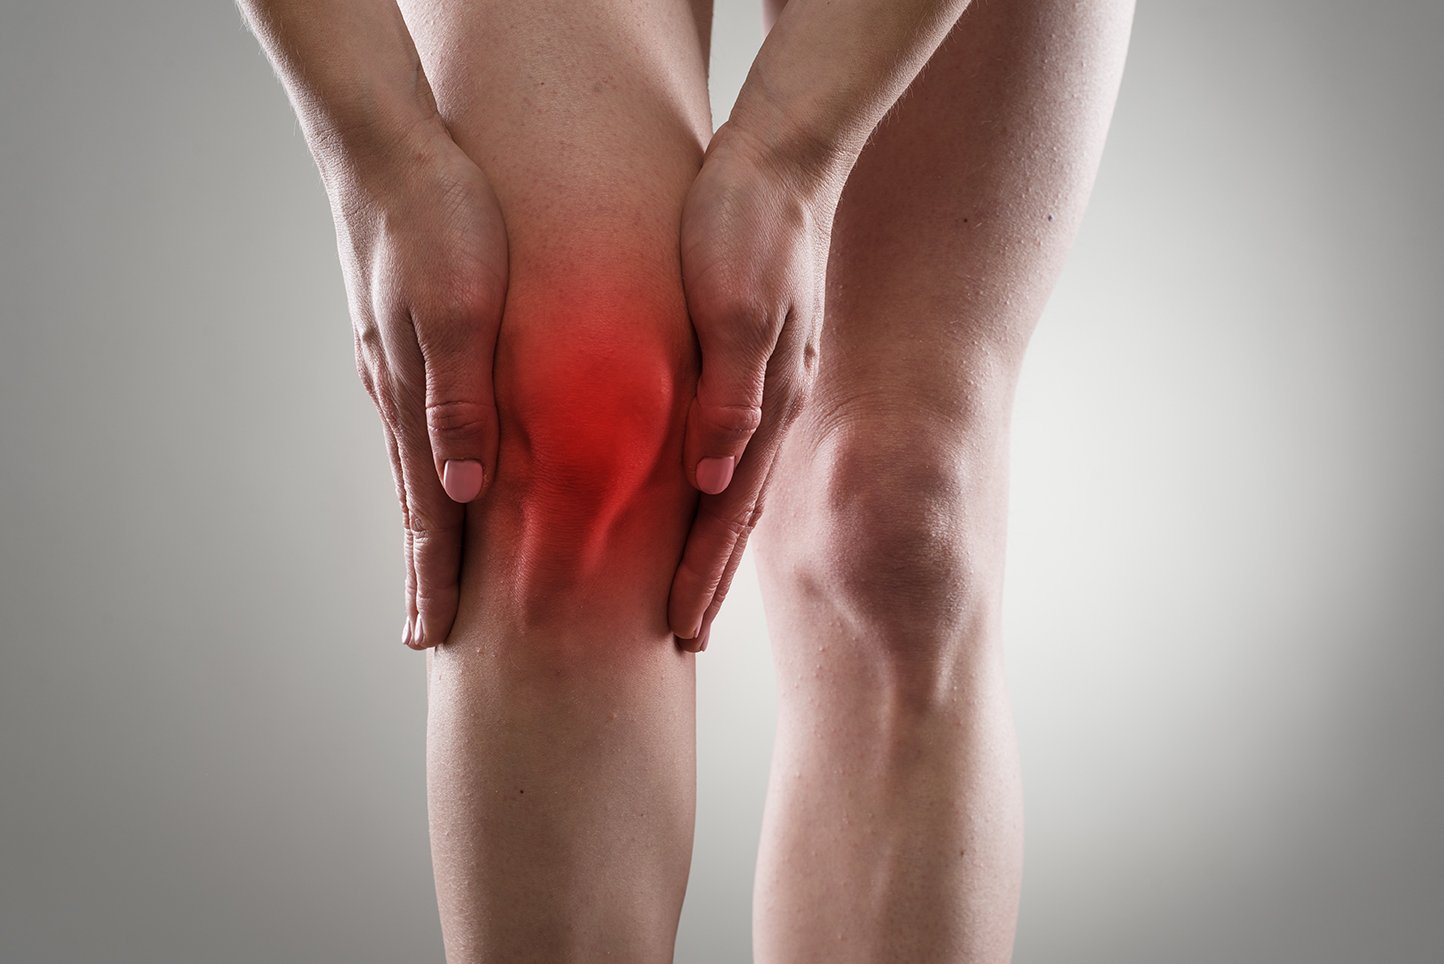 Os sinais e sintomas de derrame no joelho podem variar.